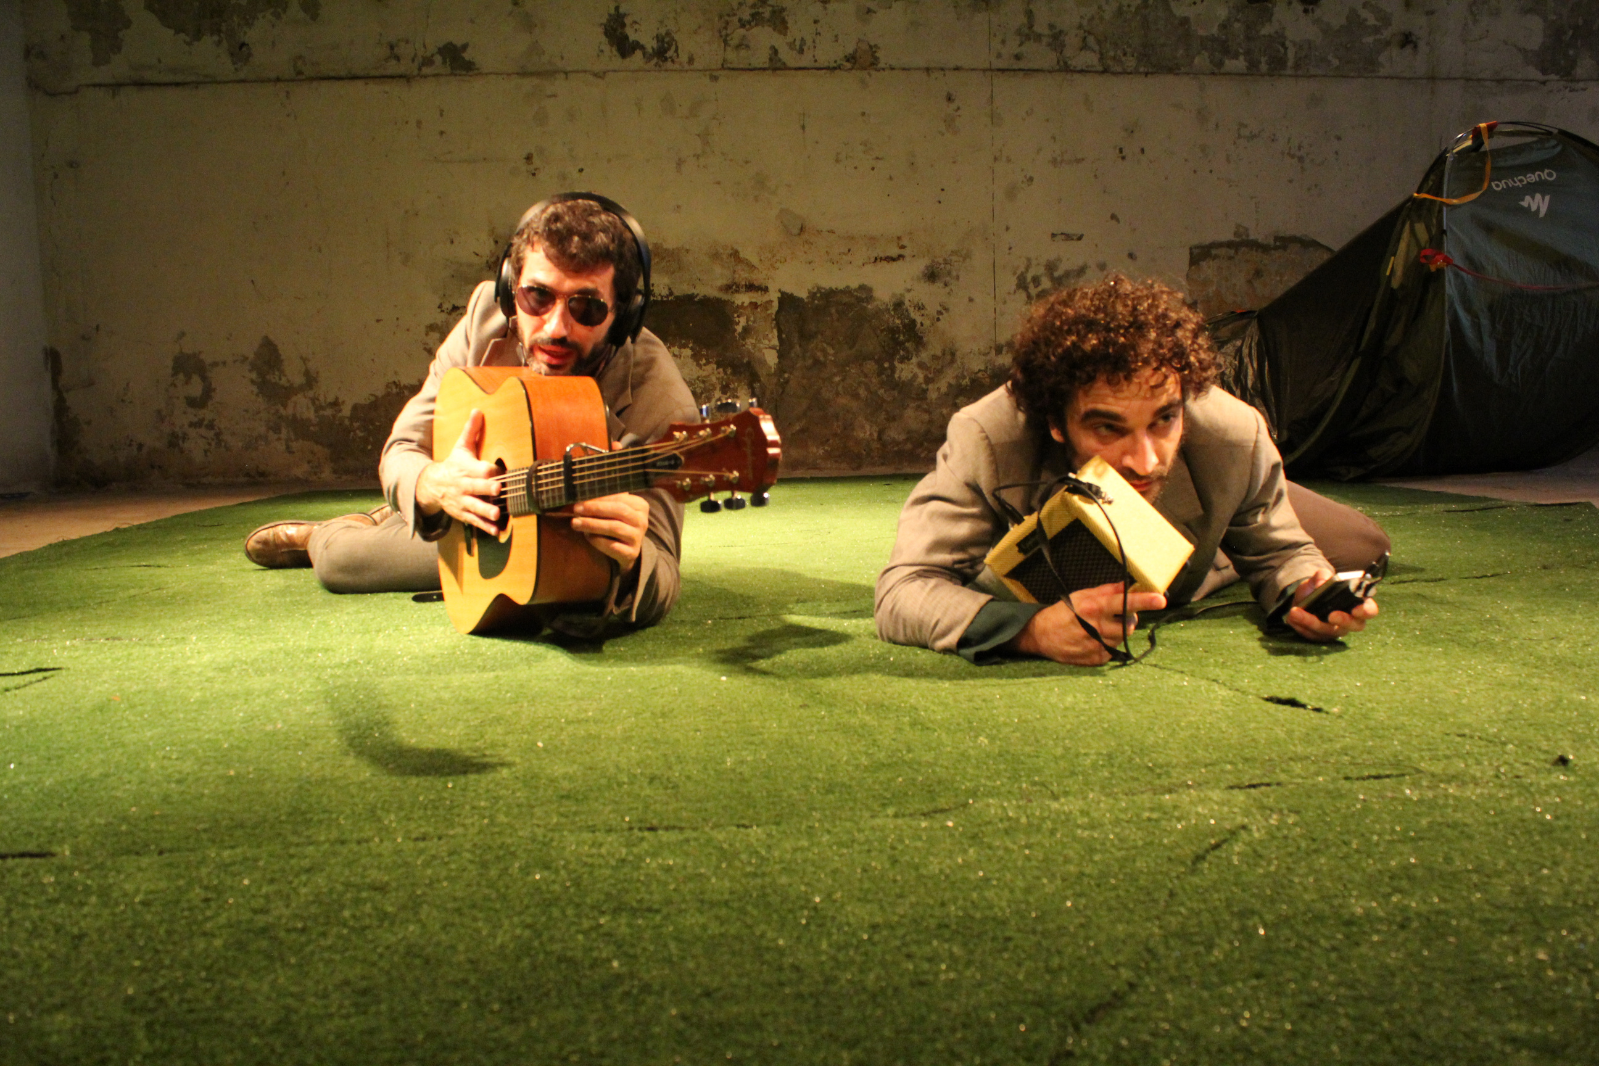 In foto, due uomini sdratiati a terra, uno imbraccia una chitarra, l'altro tiene in mano una radio